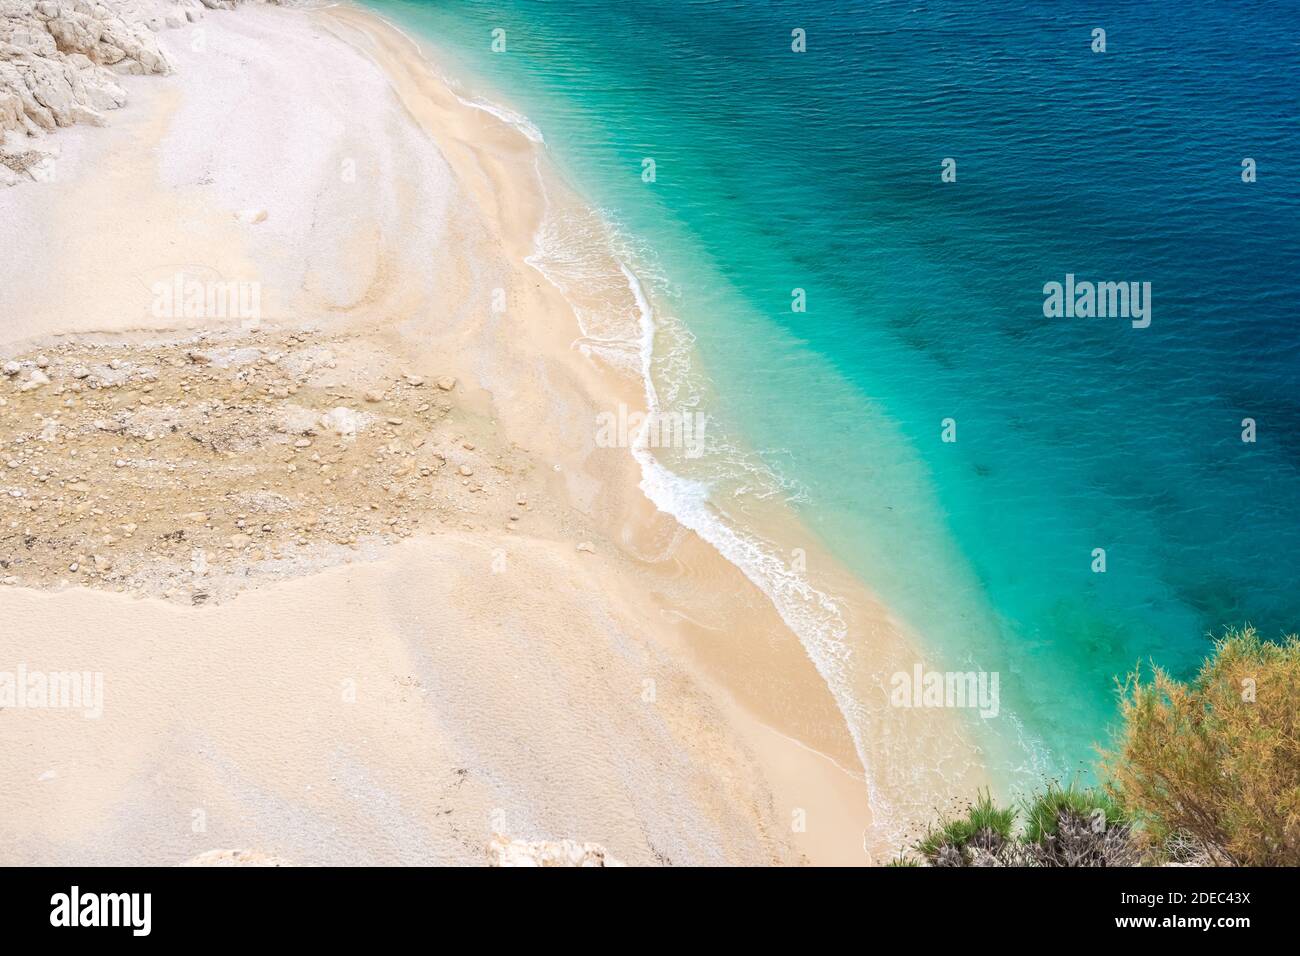 Plage de Kaputas, côte de Lycia et mer Méditerranée à Kas, Kalkan, Antalya, Turquie. Méthode Lycienne. Concept été et vacances Banque D'Images